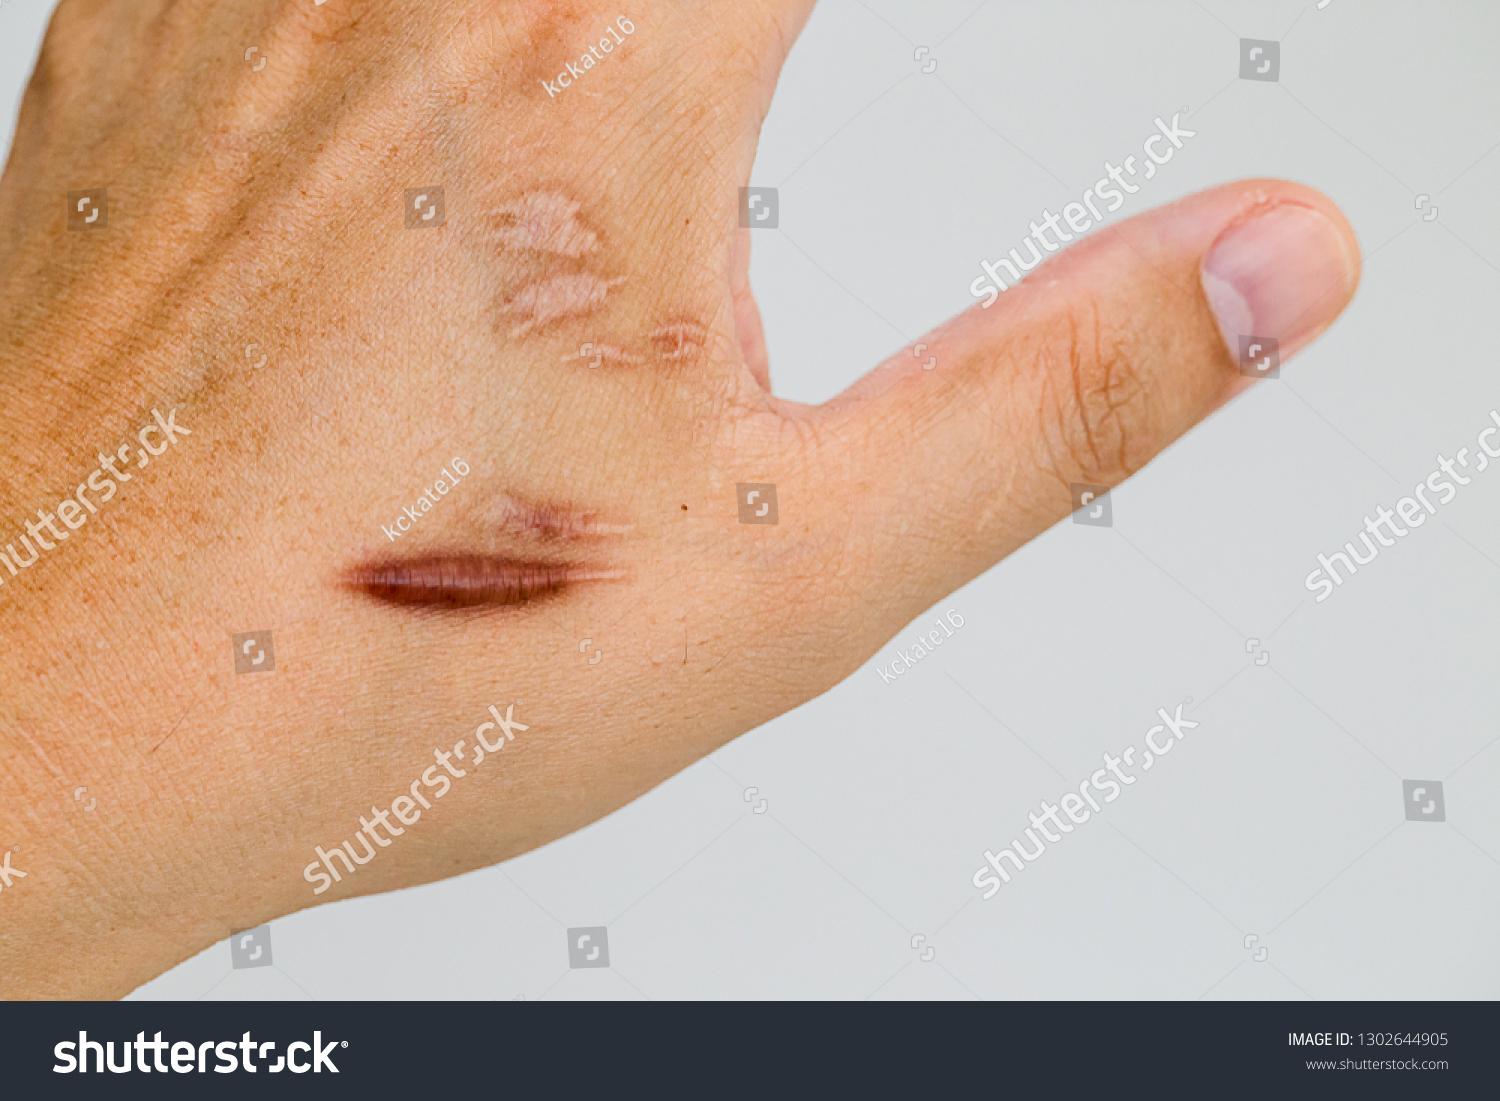 事故後の男性の手肌のケロイド瘢痕 ケロイド状の手首の皮膚の傷跡は 車の事故で手術を受けた場合に生じる 皮膚の損傷が治った部位にある一種の傷跡の形成である の写真素材 今すぐ編集 1302644905